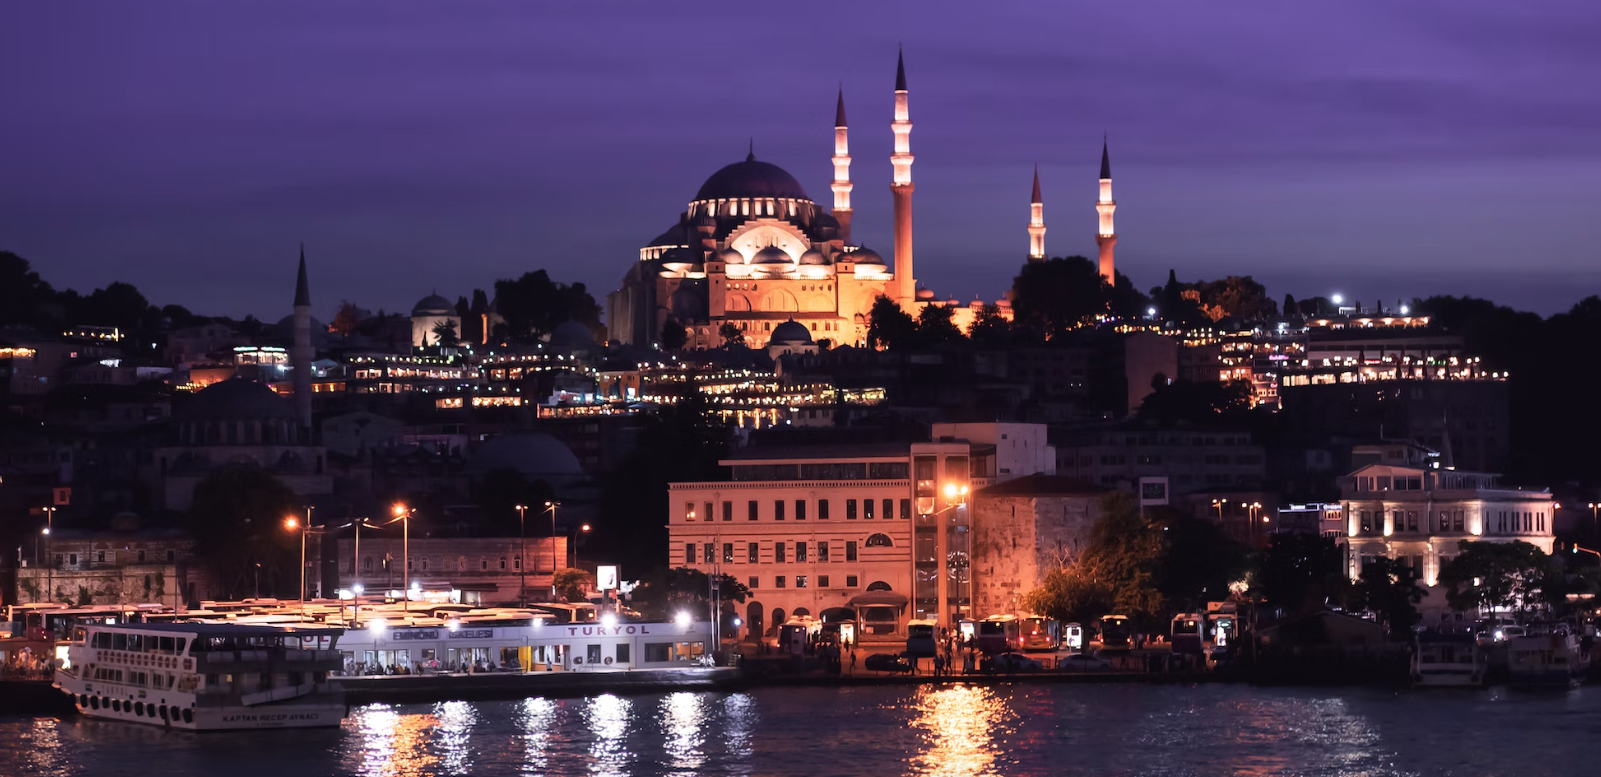 Названа стоимость отдыха в Турции на новогодних каникулах для семьи с ребёнком